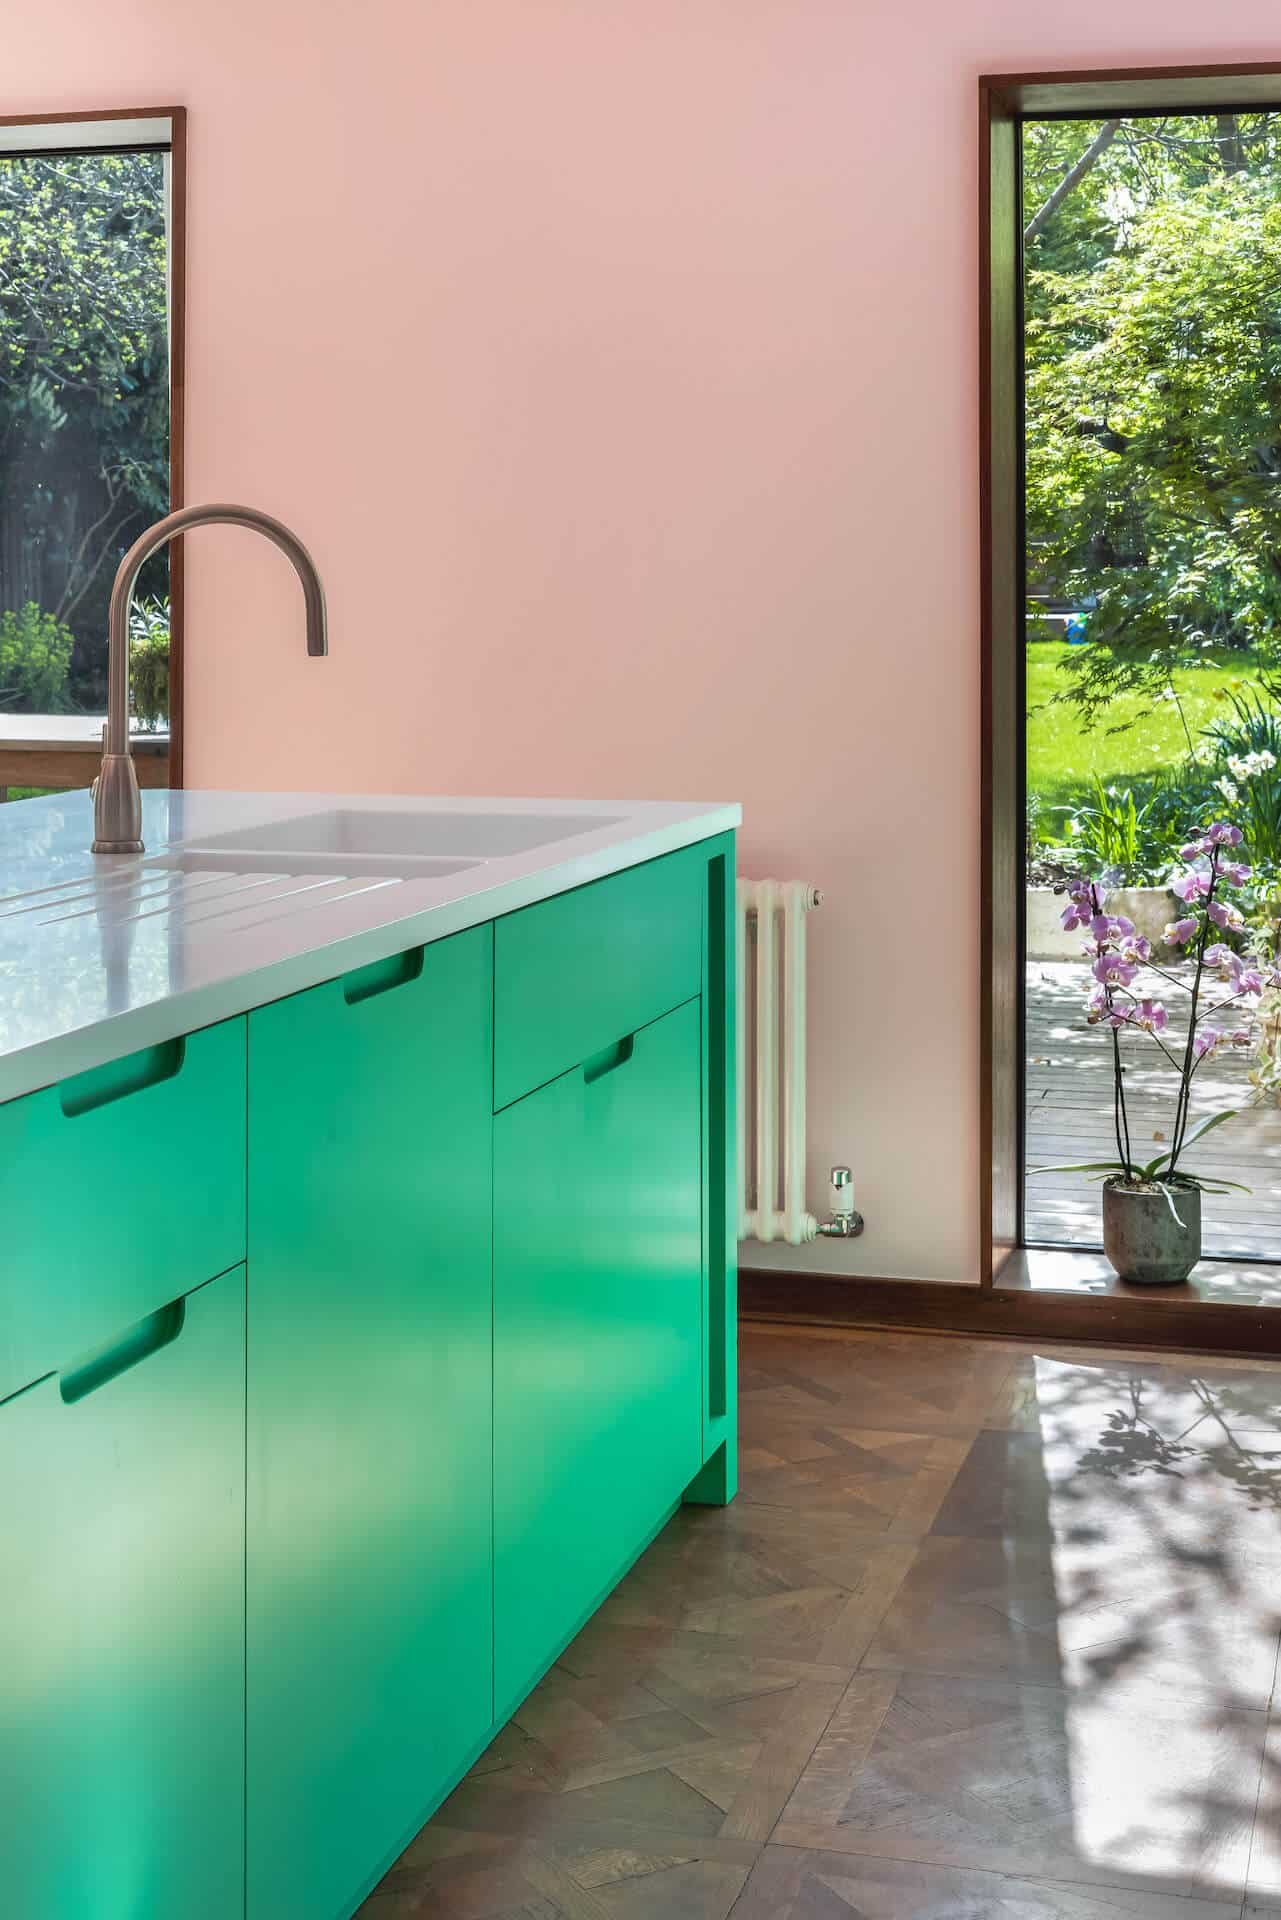 Granada Green Kitchen - Pink and green kitchen with Corian glacier white worktop